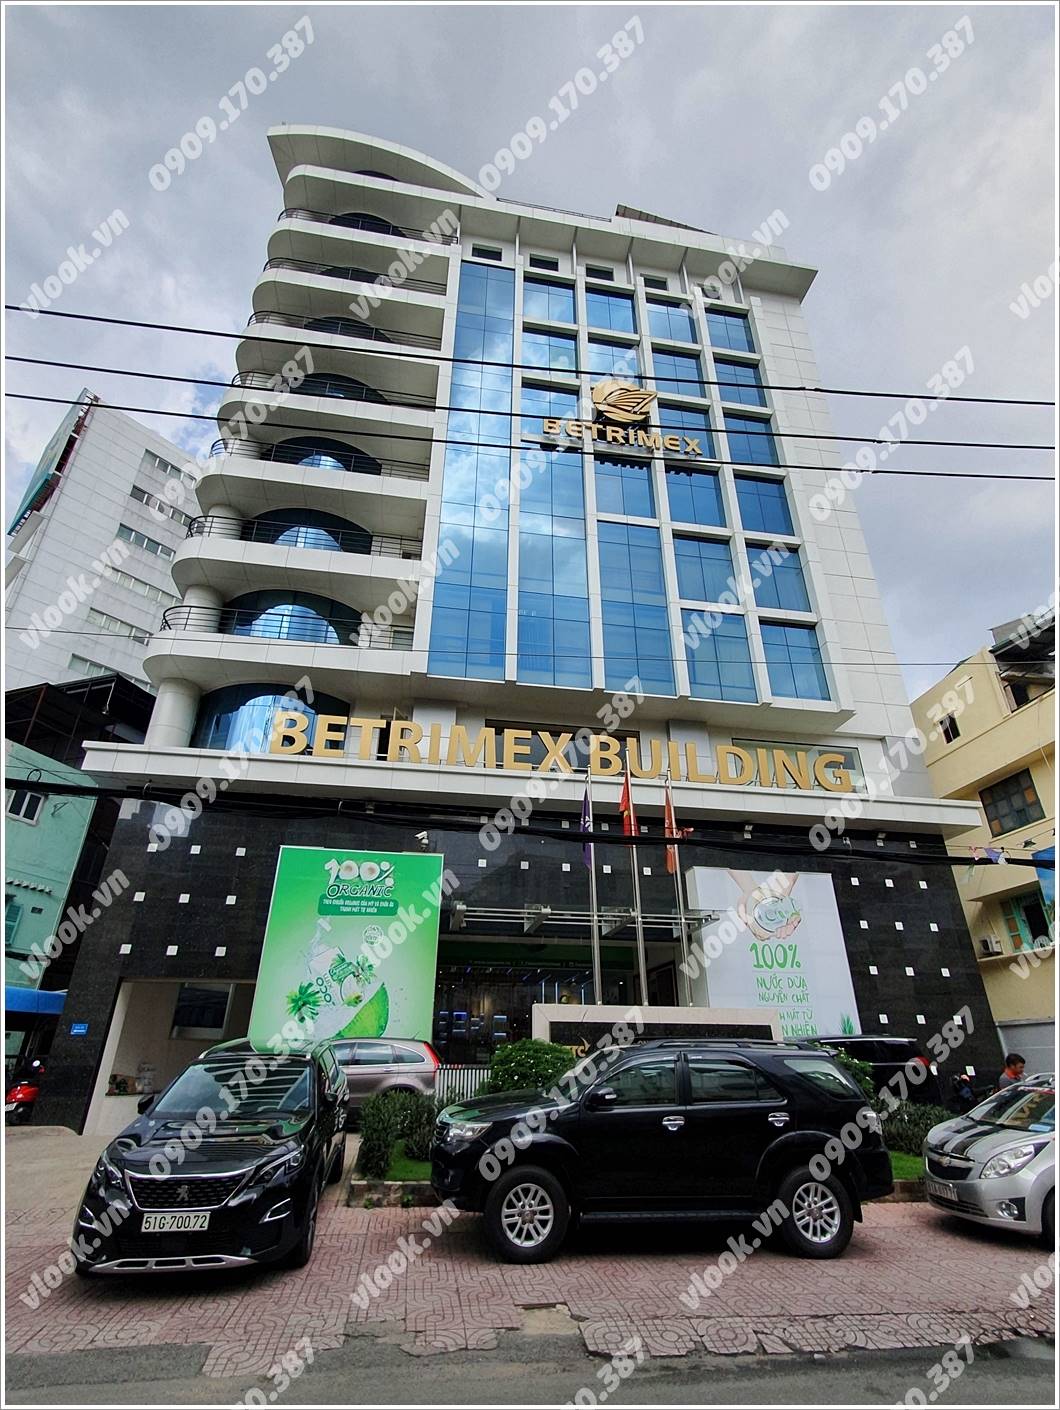 Cao ốc cho thuê văn phòng Betrimex Building, Trần huy Liệu, Quận Phú Nhuận, TPHCM - vlook.vn